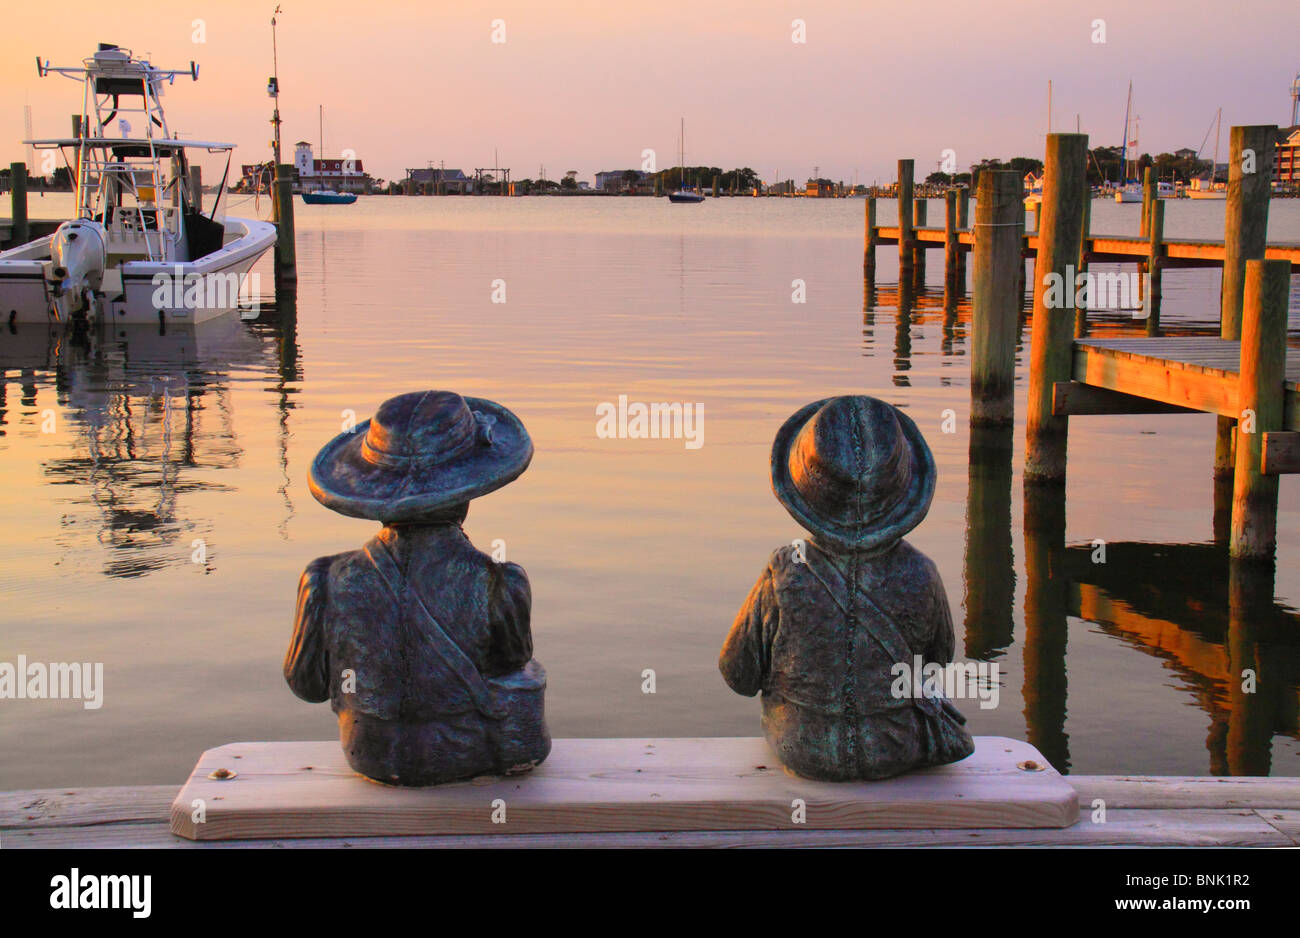 Statues de l'enfant sur un quai au coucher du soleil, Silver Lake Harbour, Ocracoke Island, Cape Hatteras National Seashore, North Carolina, USA Banque D'Images